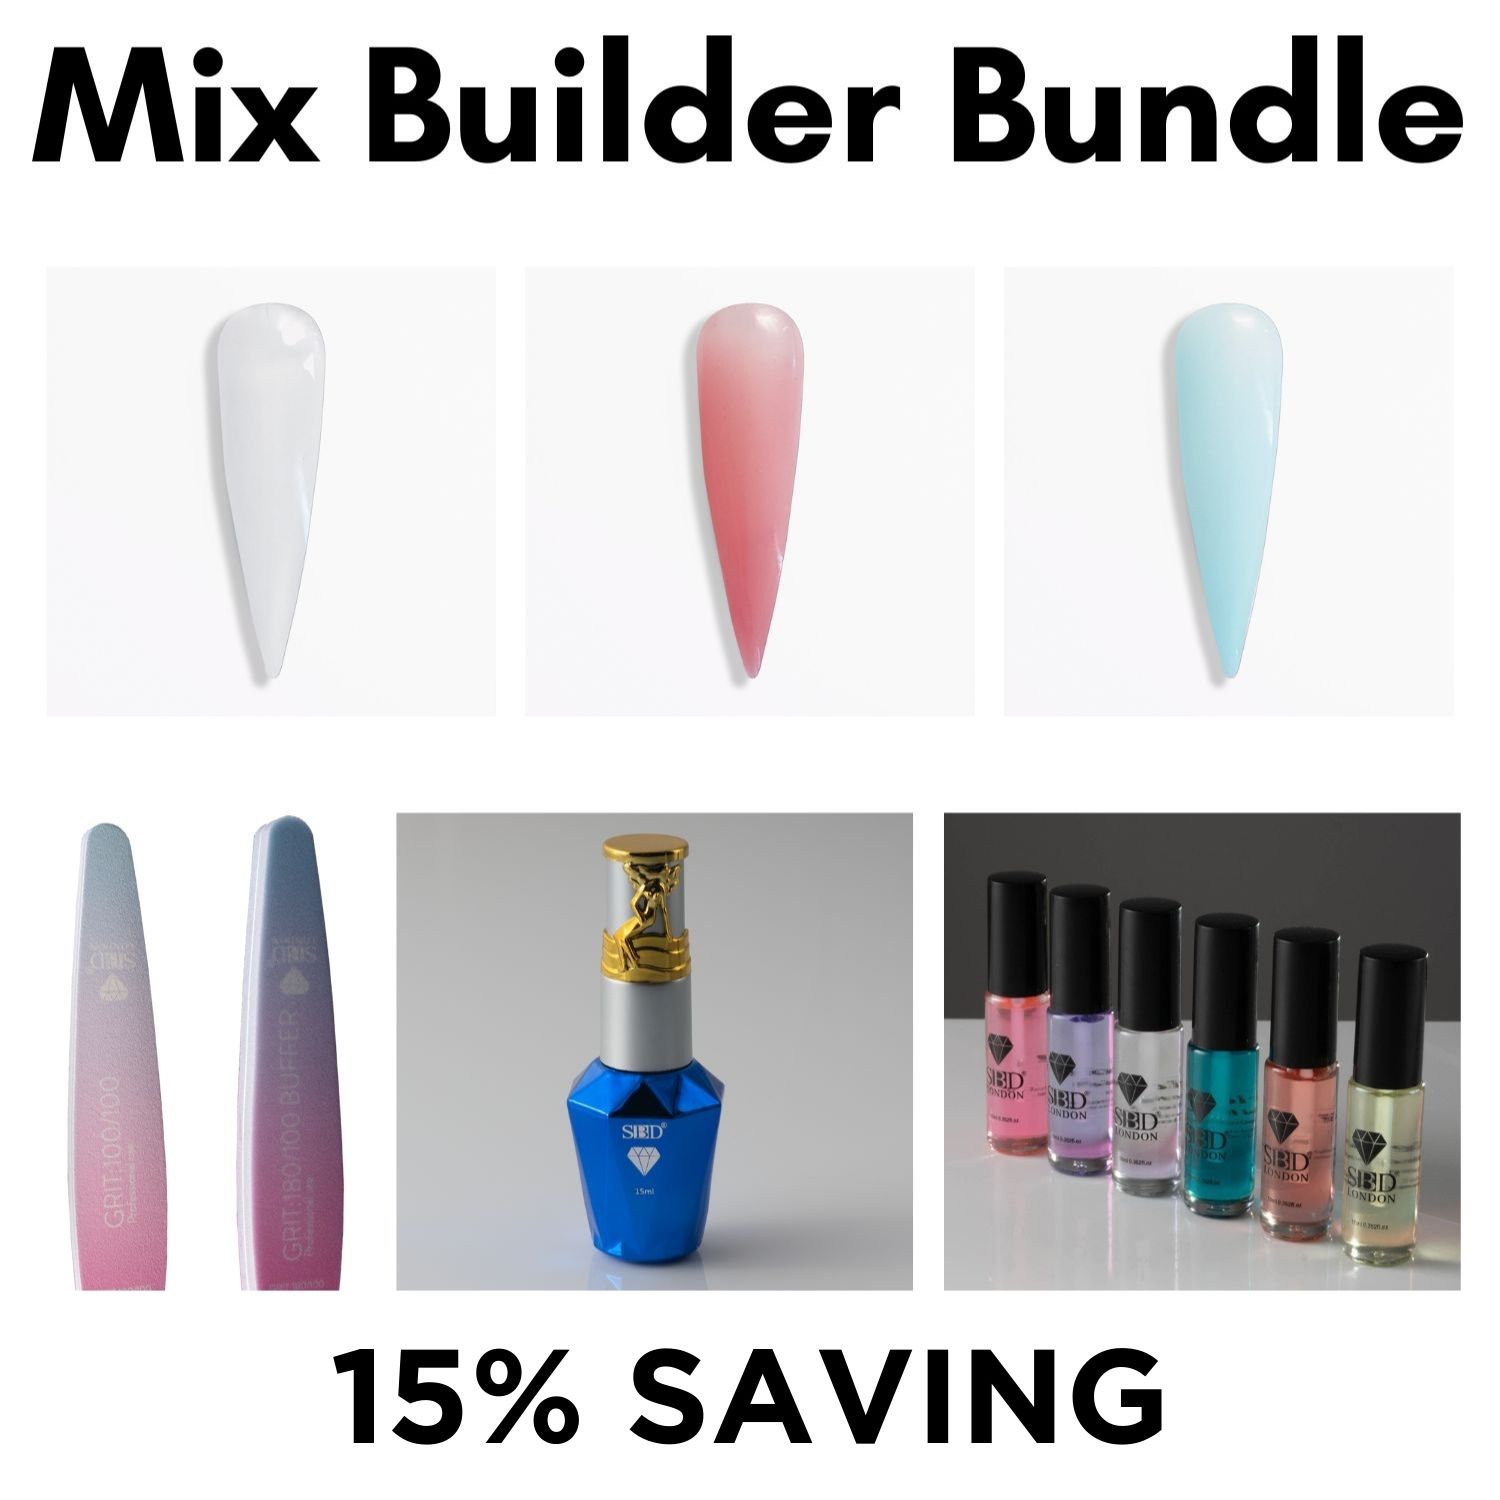 Mix Builder Bundle